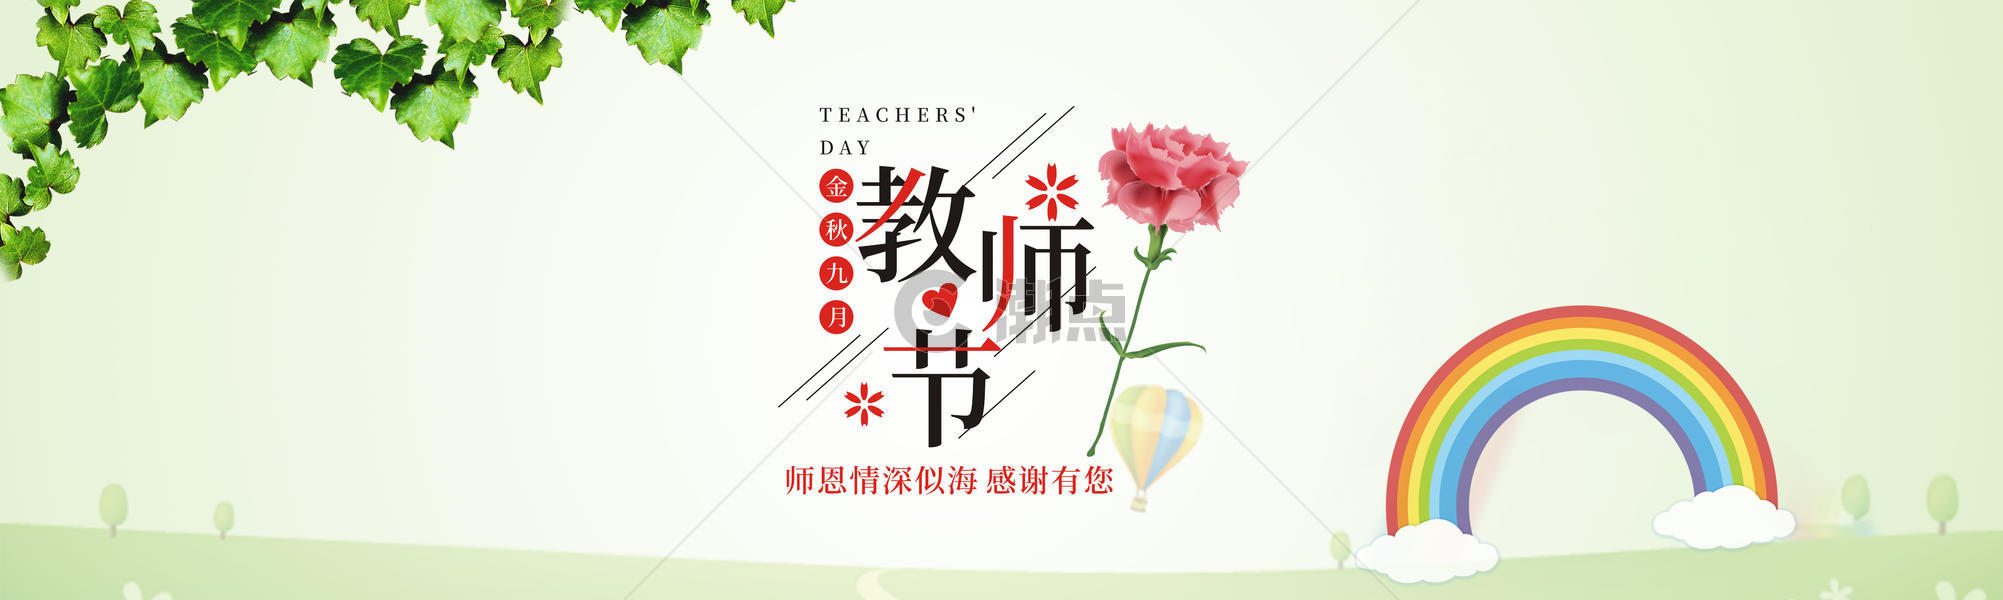 教师节banner图片素材免费下载